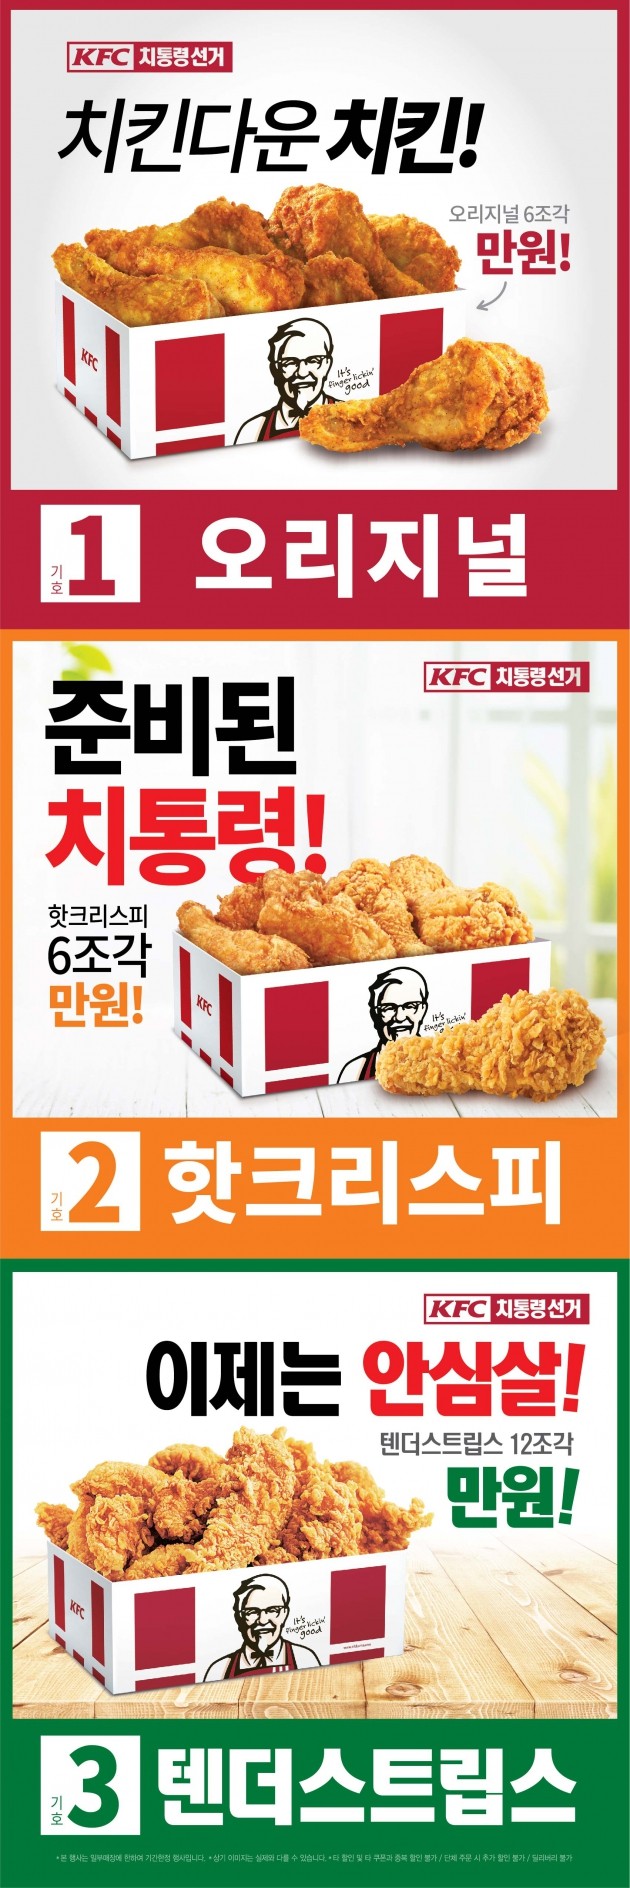 KFC, 치킨 대통령 선거 이벤트…만원으로 뽑는 '치통령'